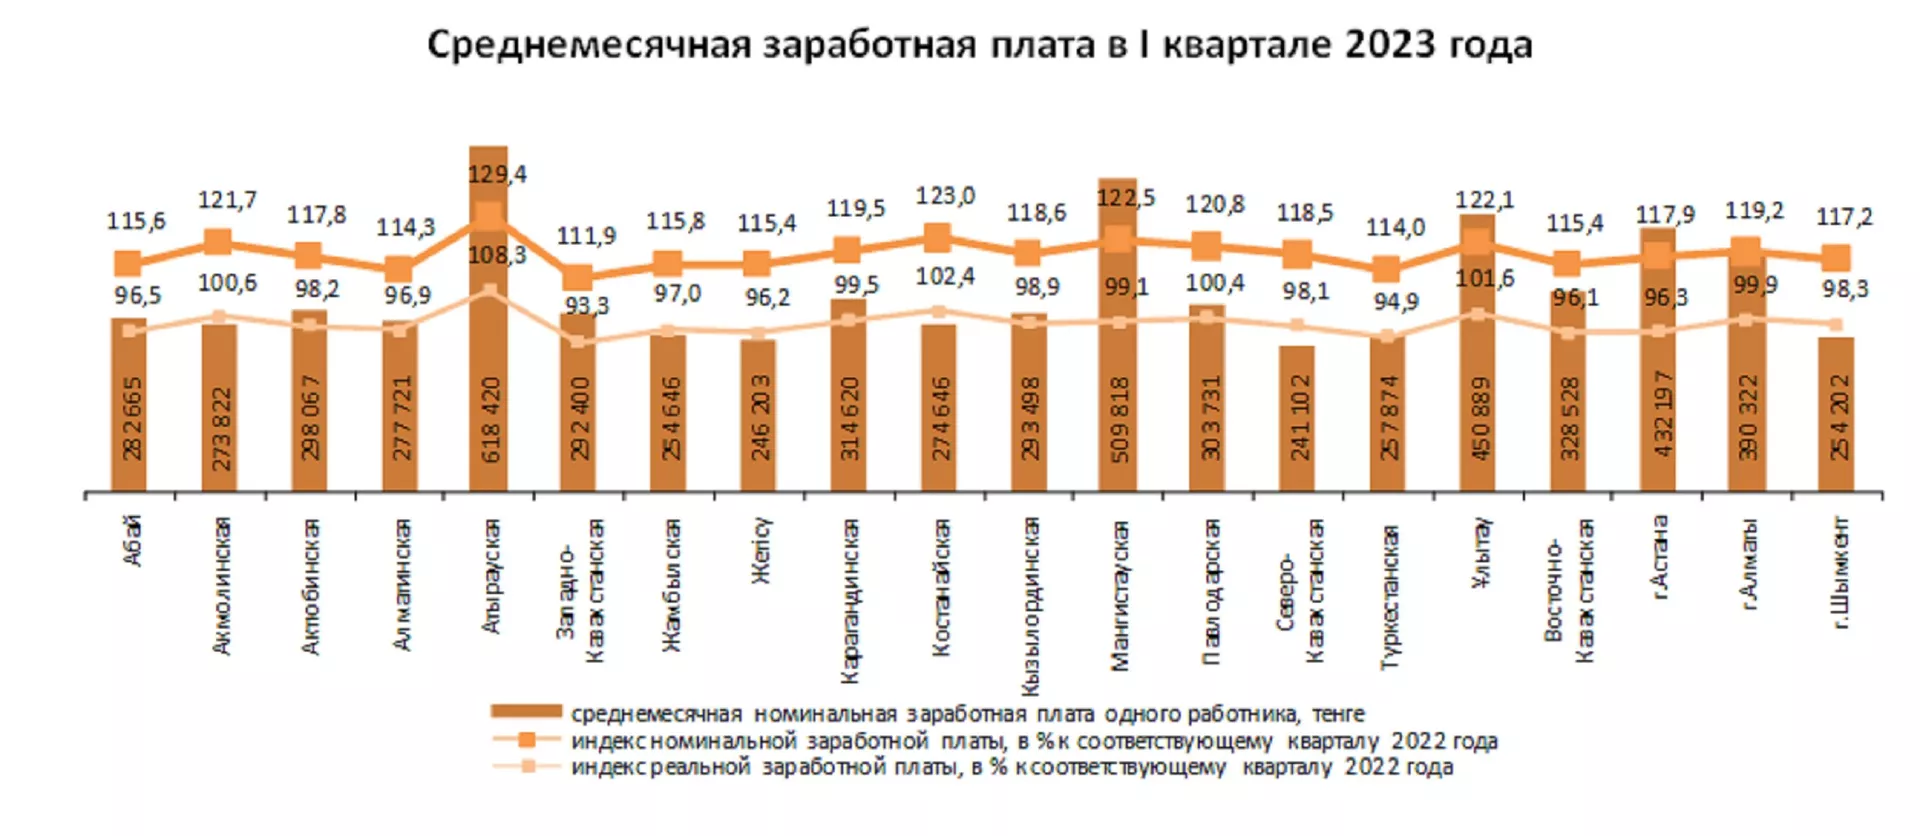 Среднемесячная заработная плата по регионам Казахстана в первом квартале 2023 года - Sputnik Казахстан, 1920, 05.05.2023